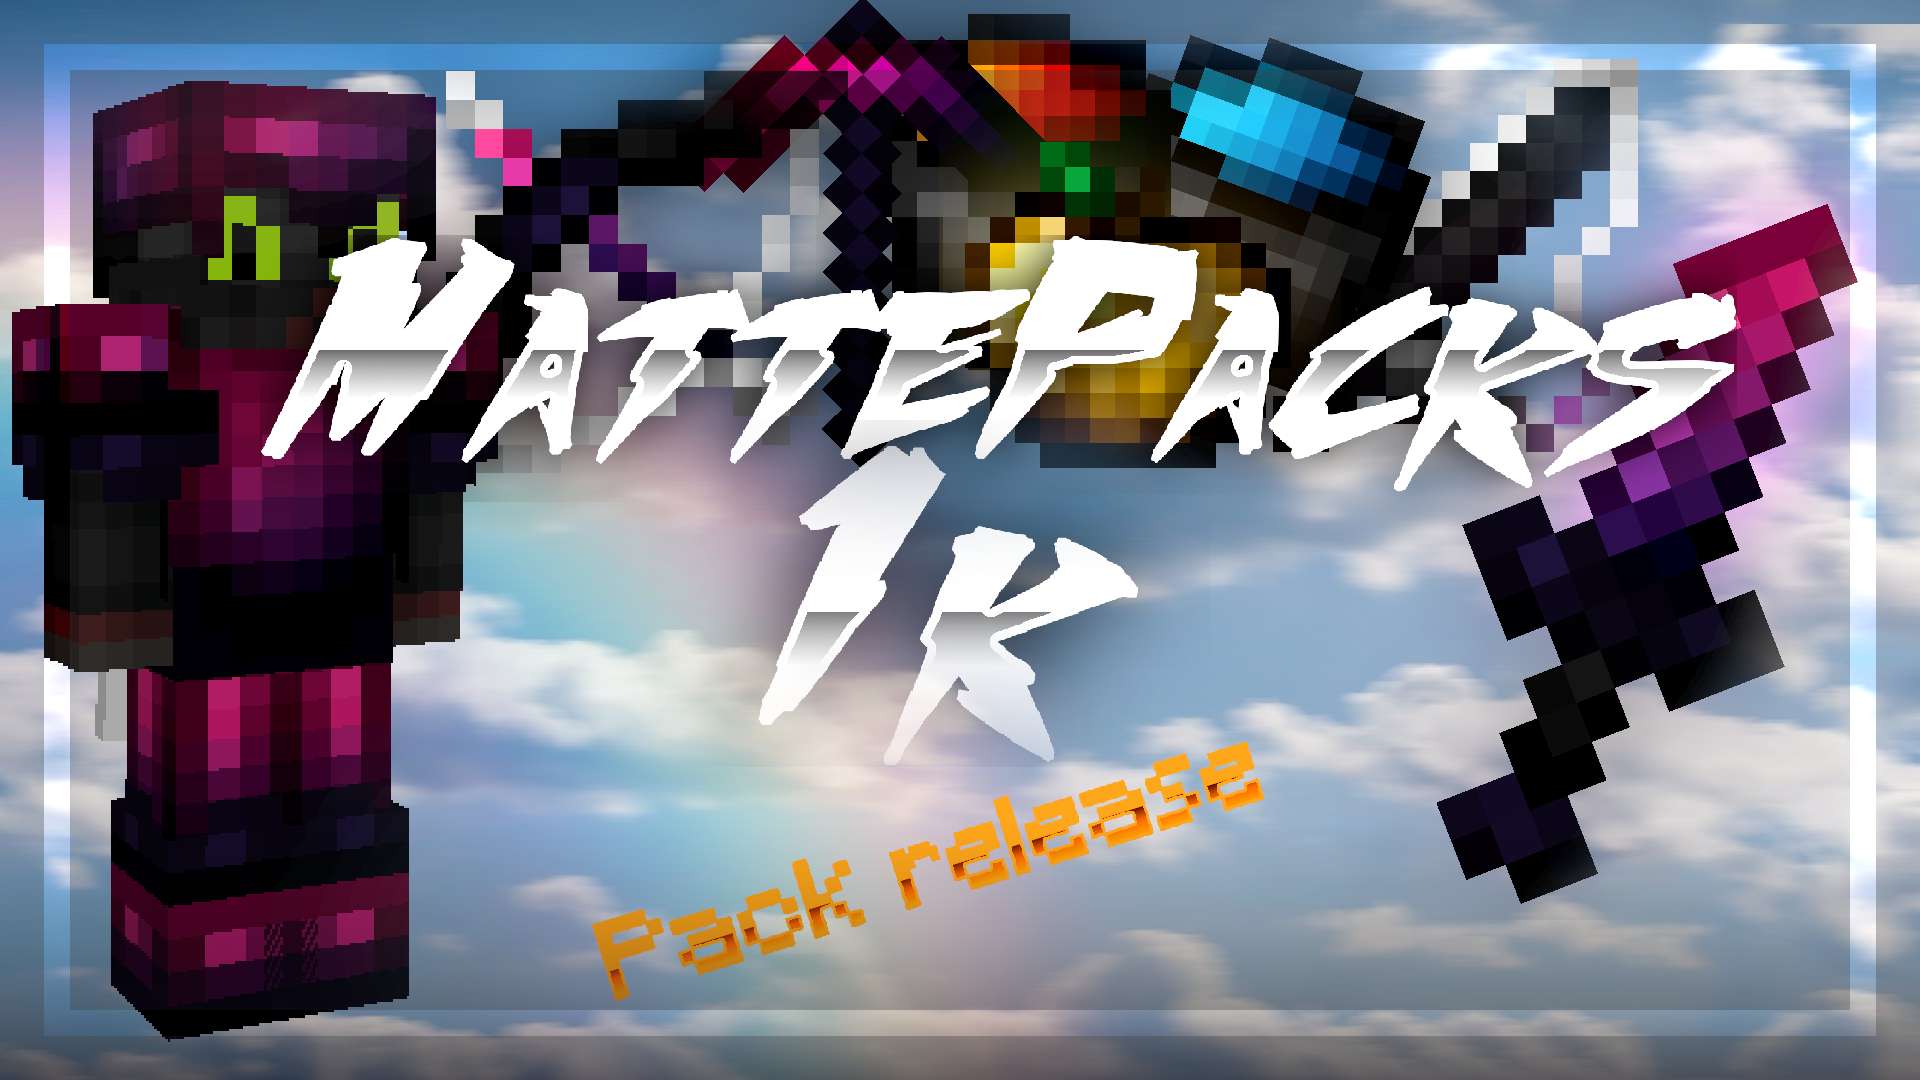 MattePacks 1k 16x by MattePacks on PvPRP